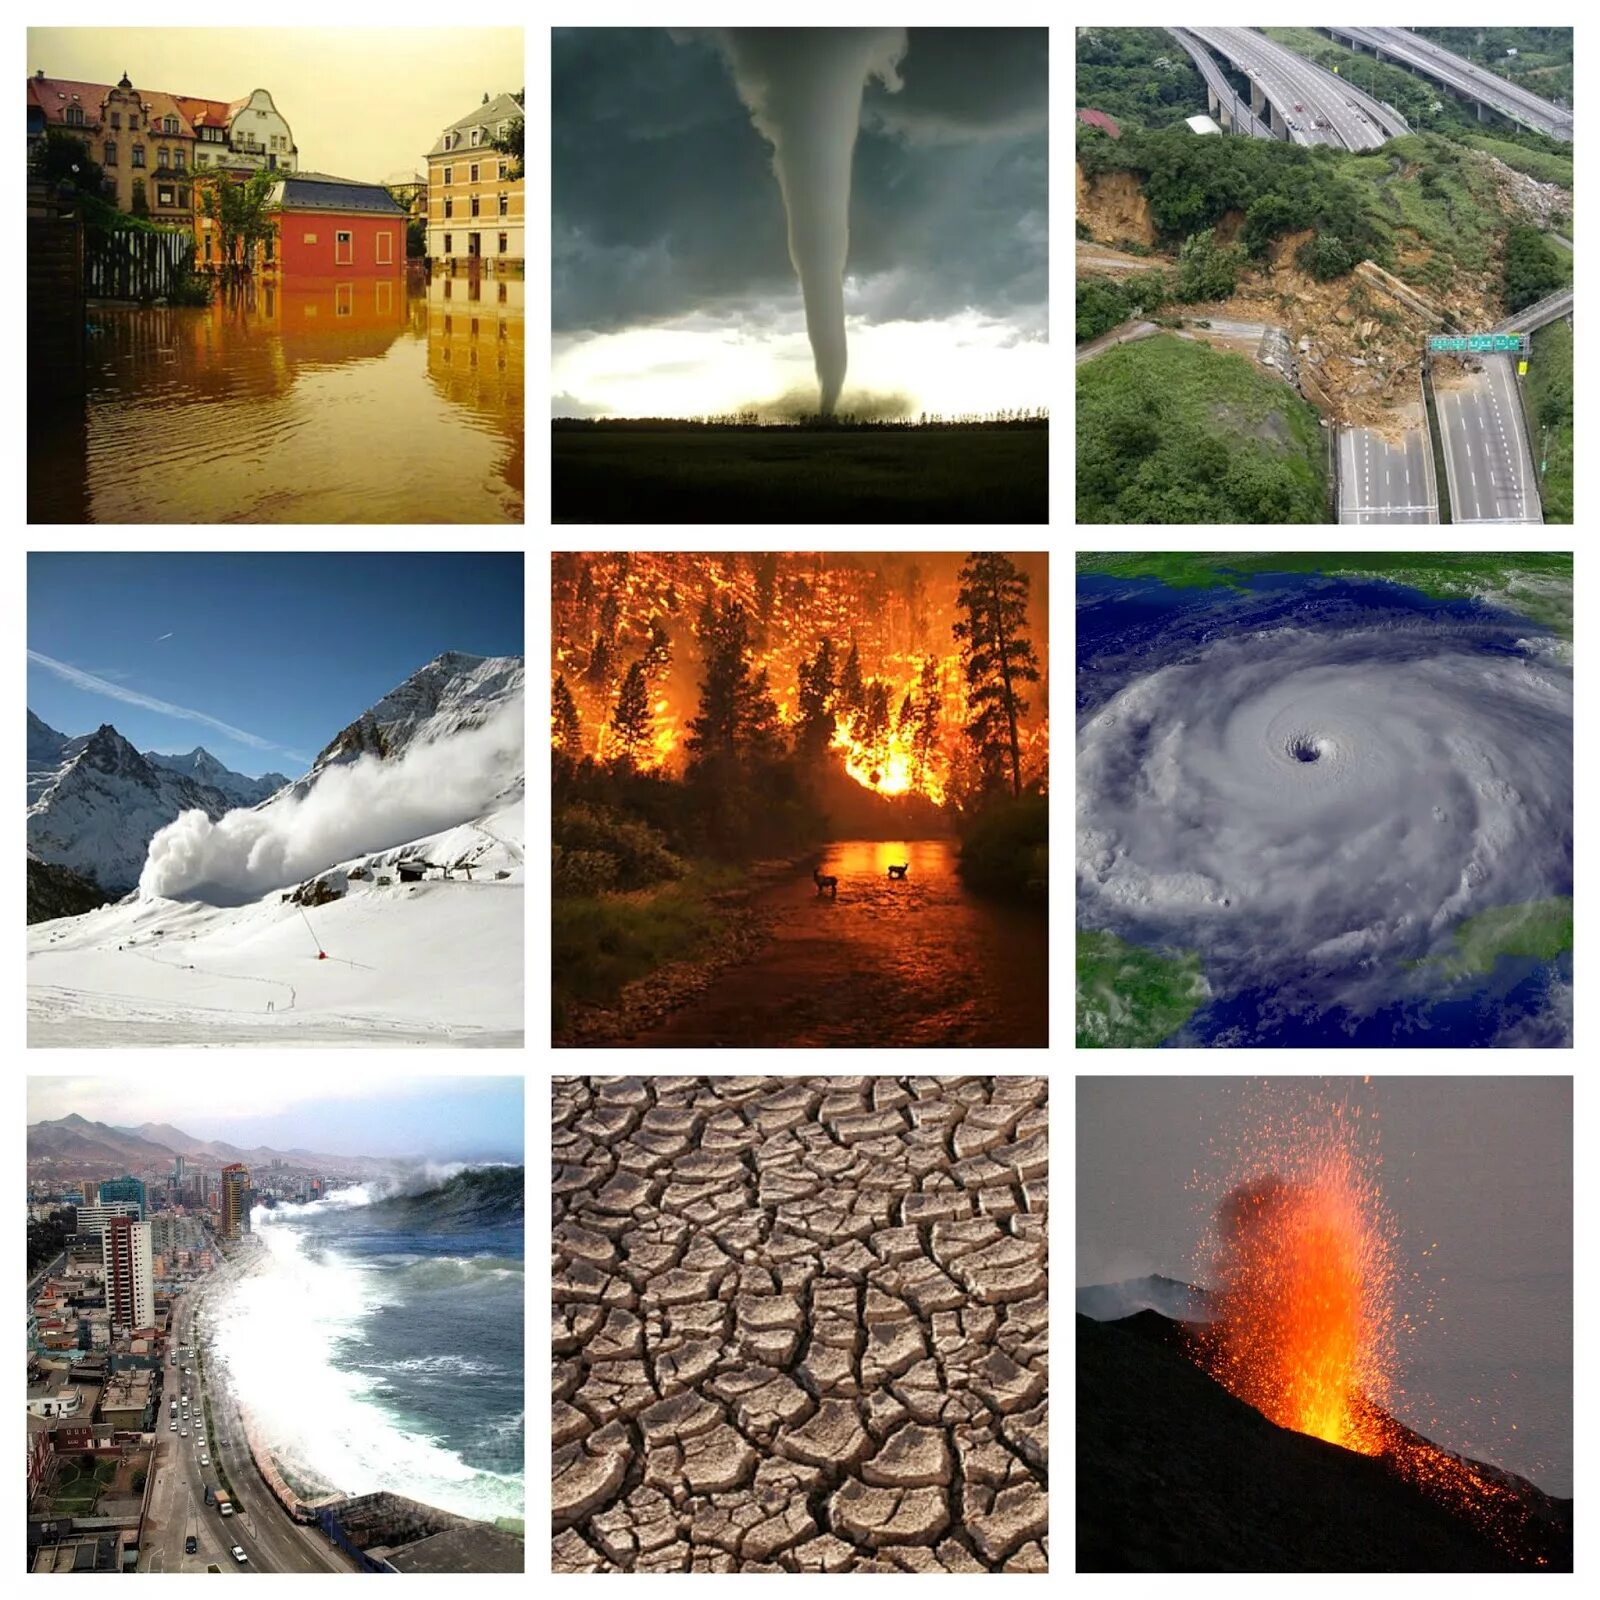 Types of natural. Стихийные бедствия. Катастрофы природного характера. Природные стихии. Стихийные бедствия коллаж.